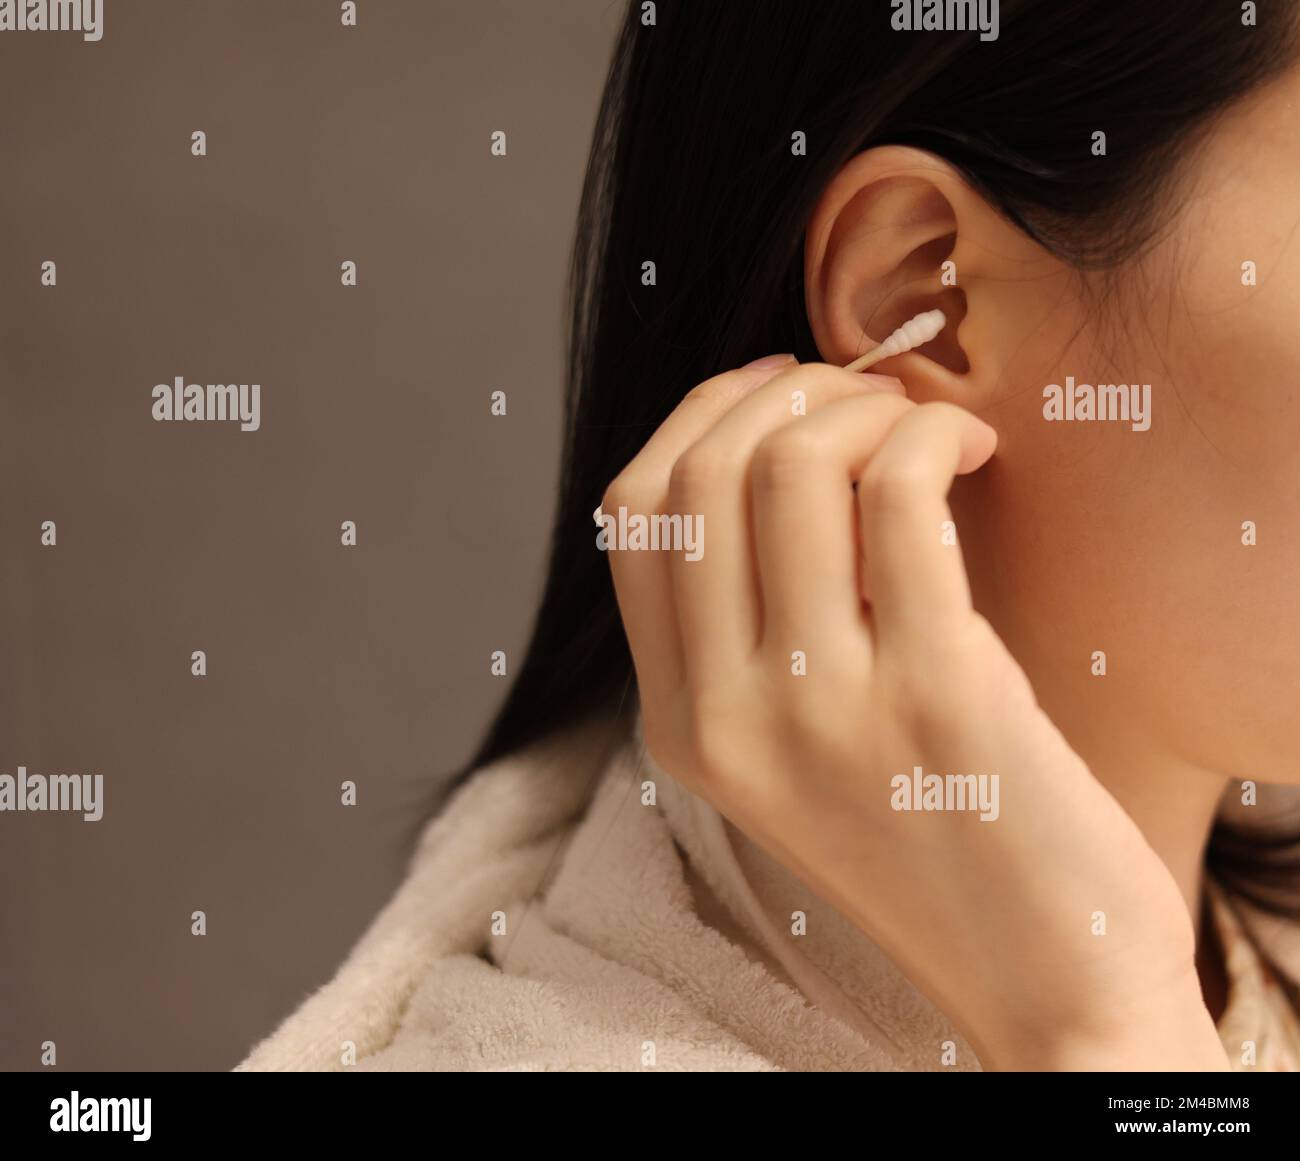 Eine Frau reinigt ihr Ohr nach dem Duschen mit einem Wattestäbchen und pflückt das Ohr mit Wattestäbchen von Hand Stockfoto